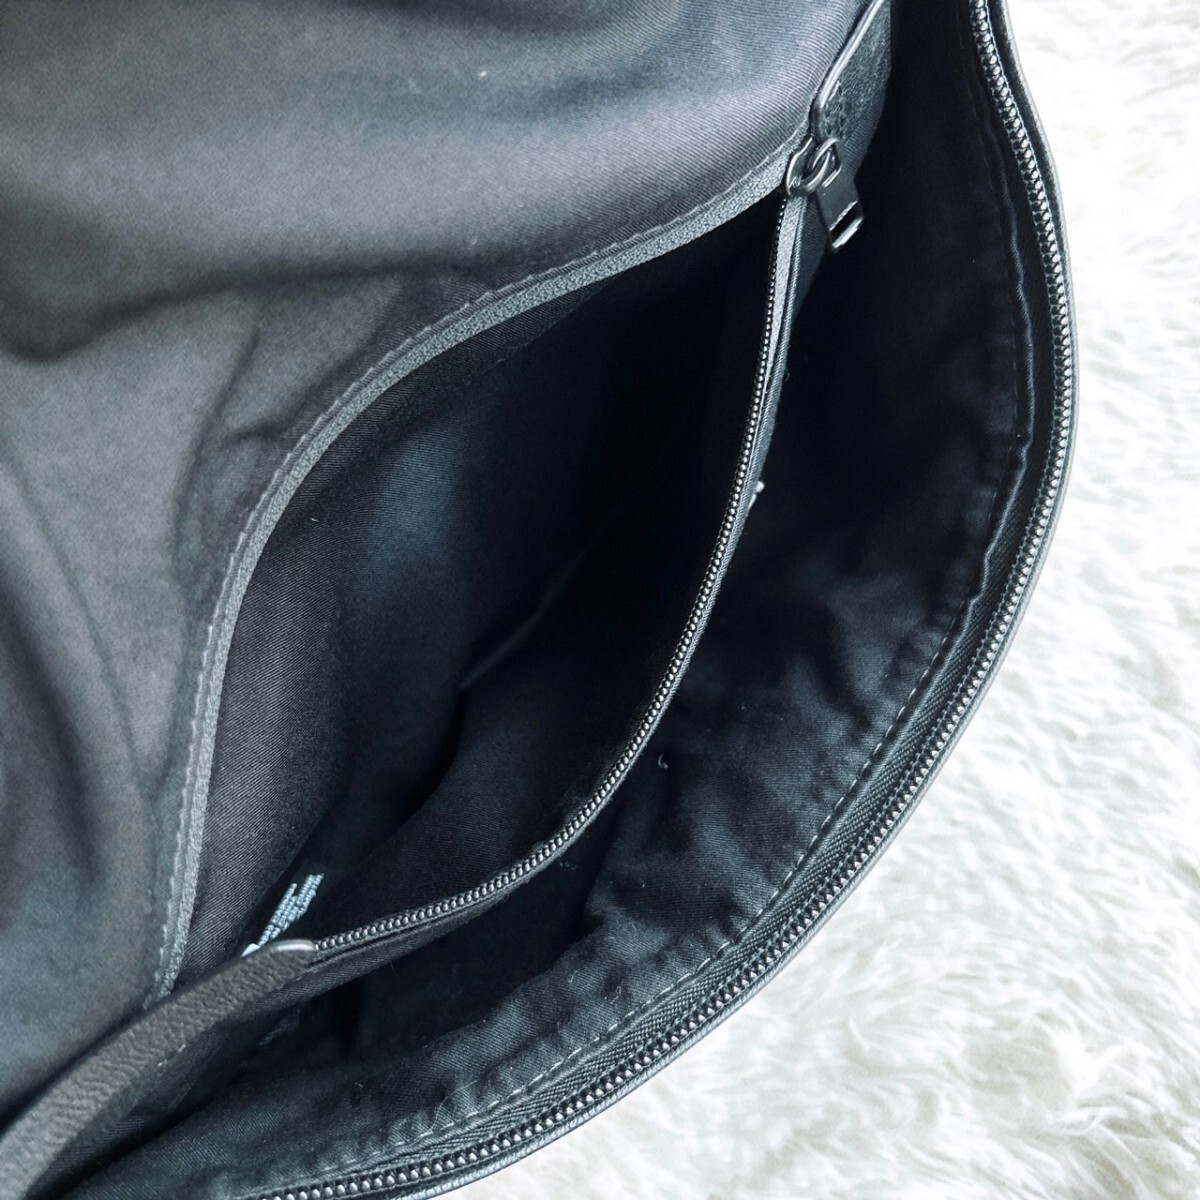  превосходный товар!DIESEL дизель мужской сумка "body" сумка на плечо натуральная кожа черный чёрный Logo металлические принадлежности плечо .. наклонный .. сумка-пояс 